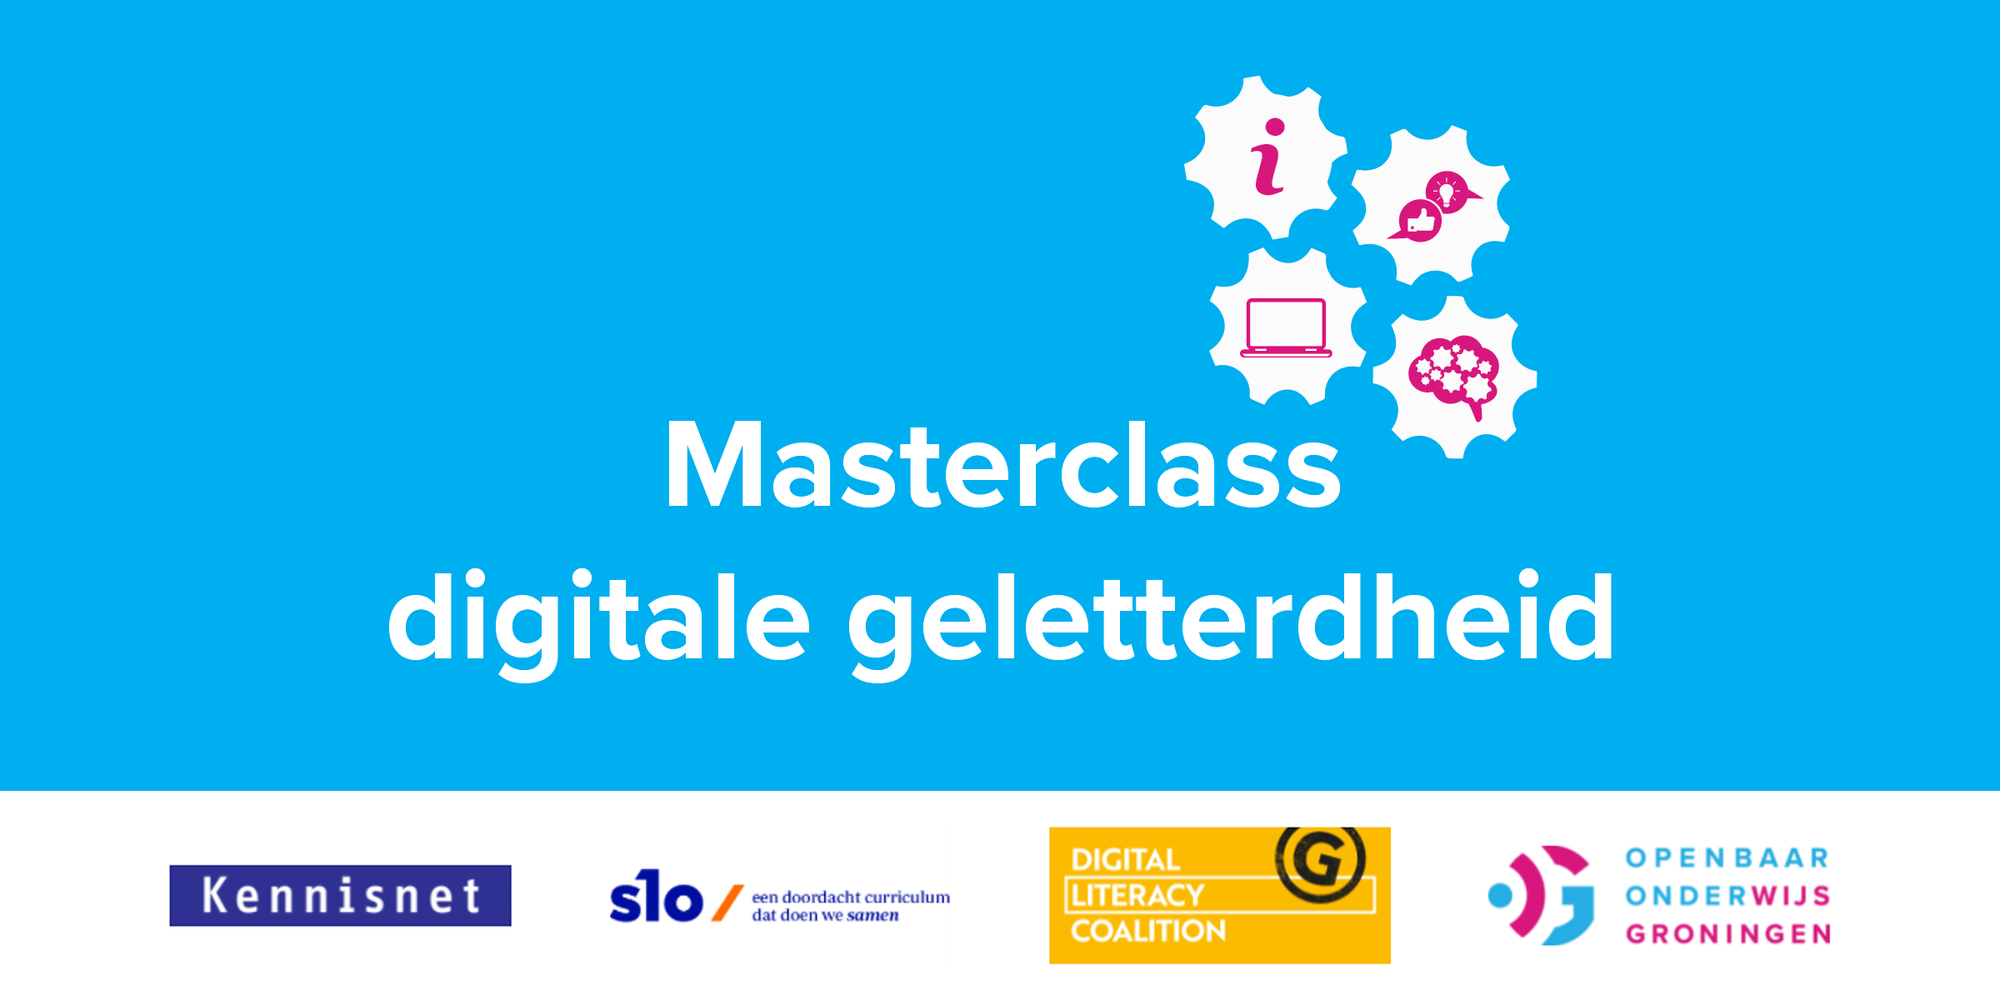 De Masterclass Digitale Geletterdheid wordt georganiseerd door Openbaar Onderwijs Groningen, in samenwerking met Kennisnet, SLO 